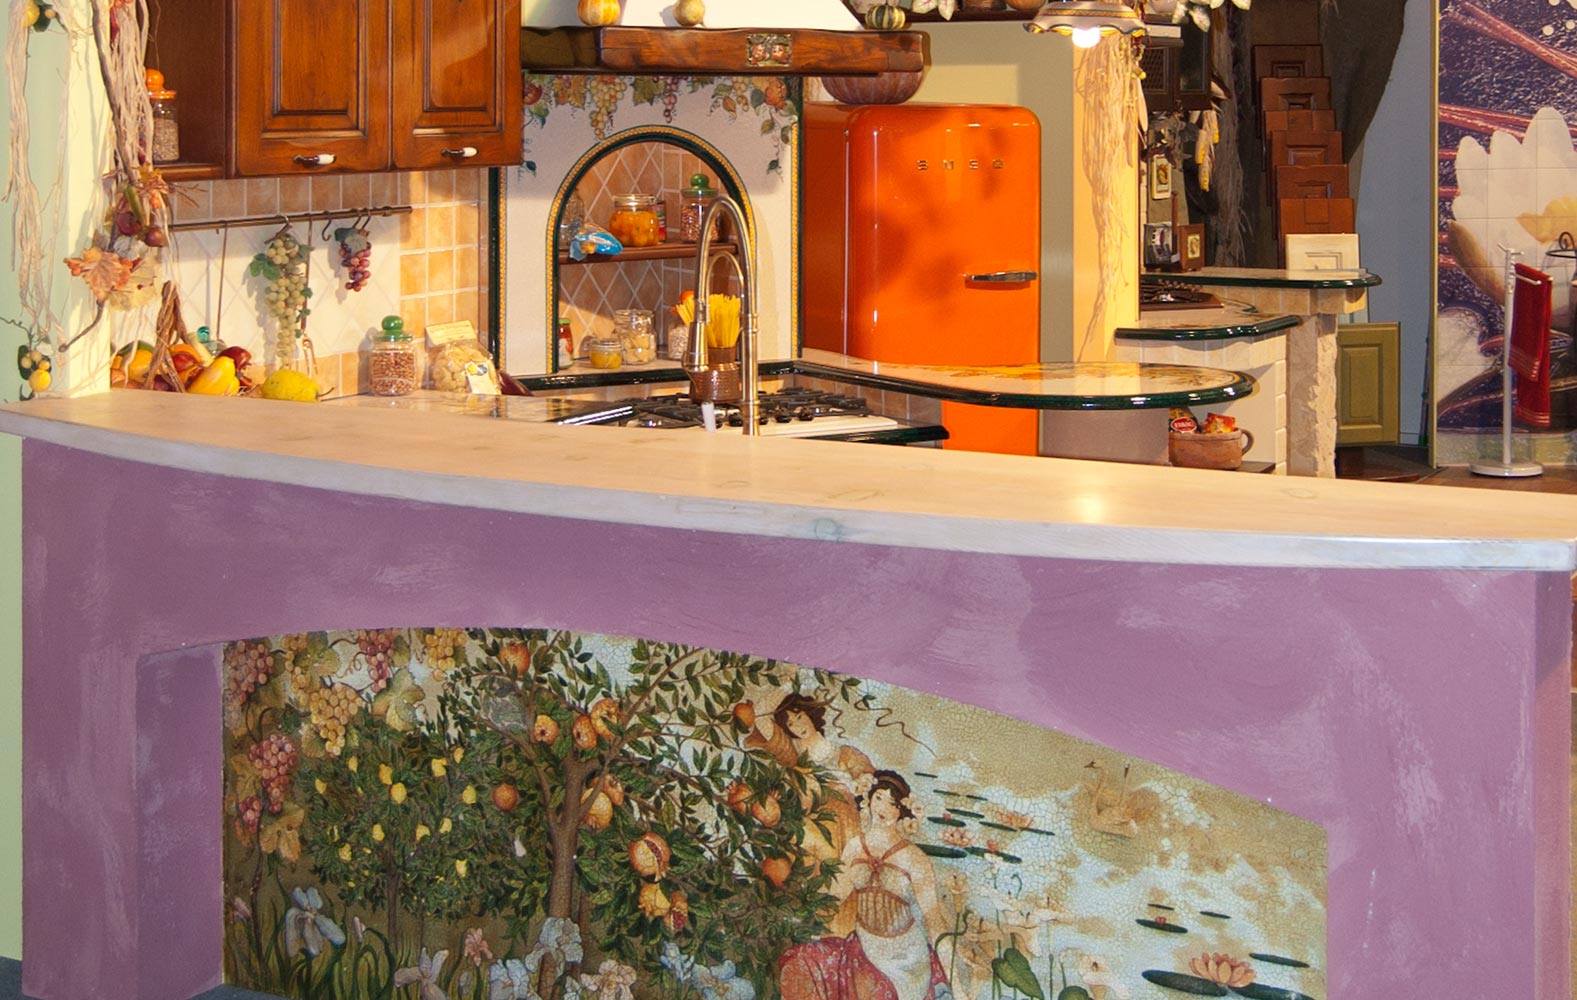 penisola cucina con pannello artistico decorato a mano